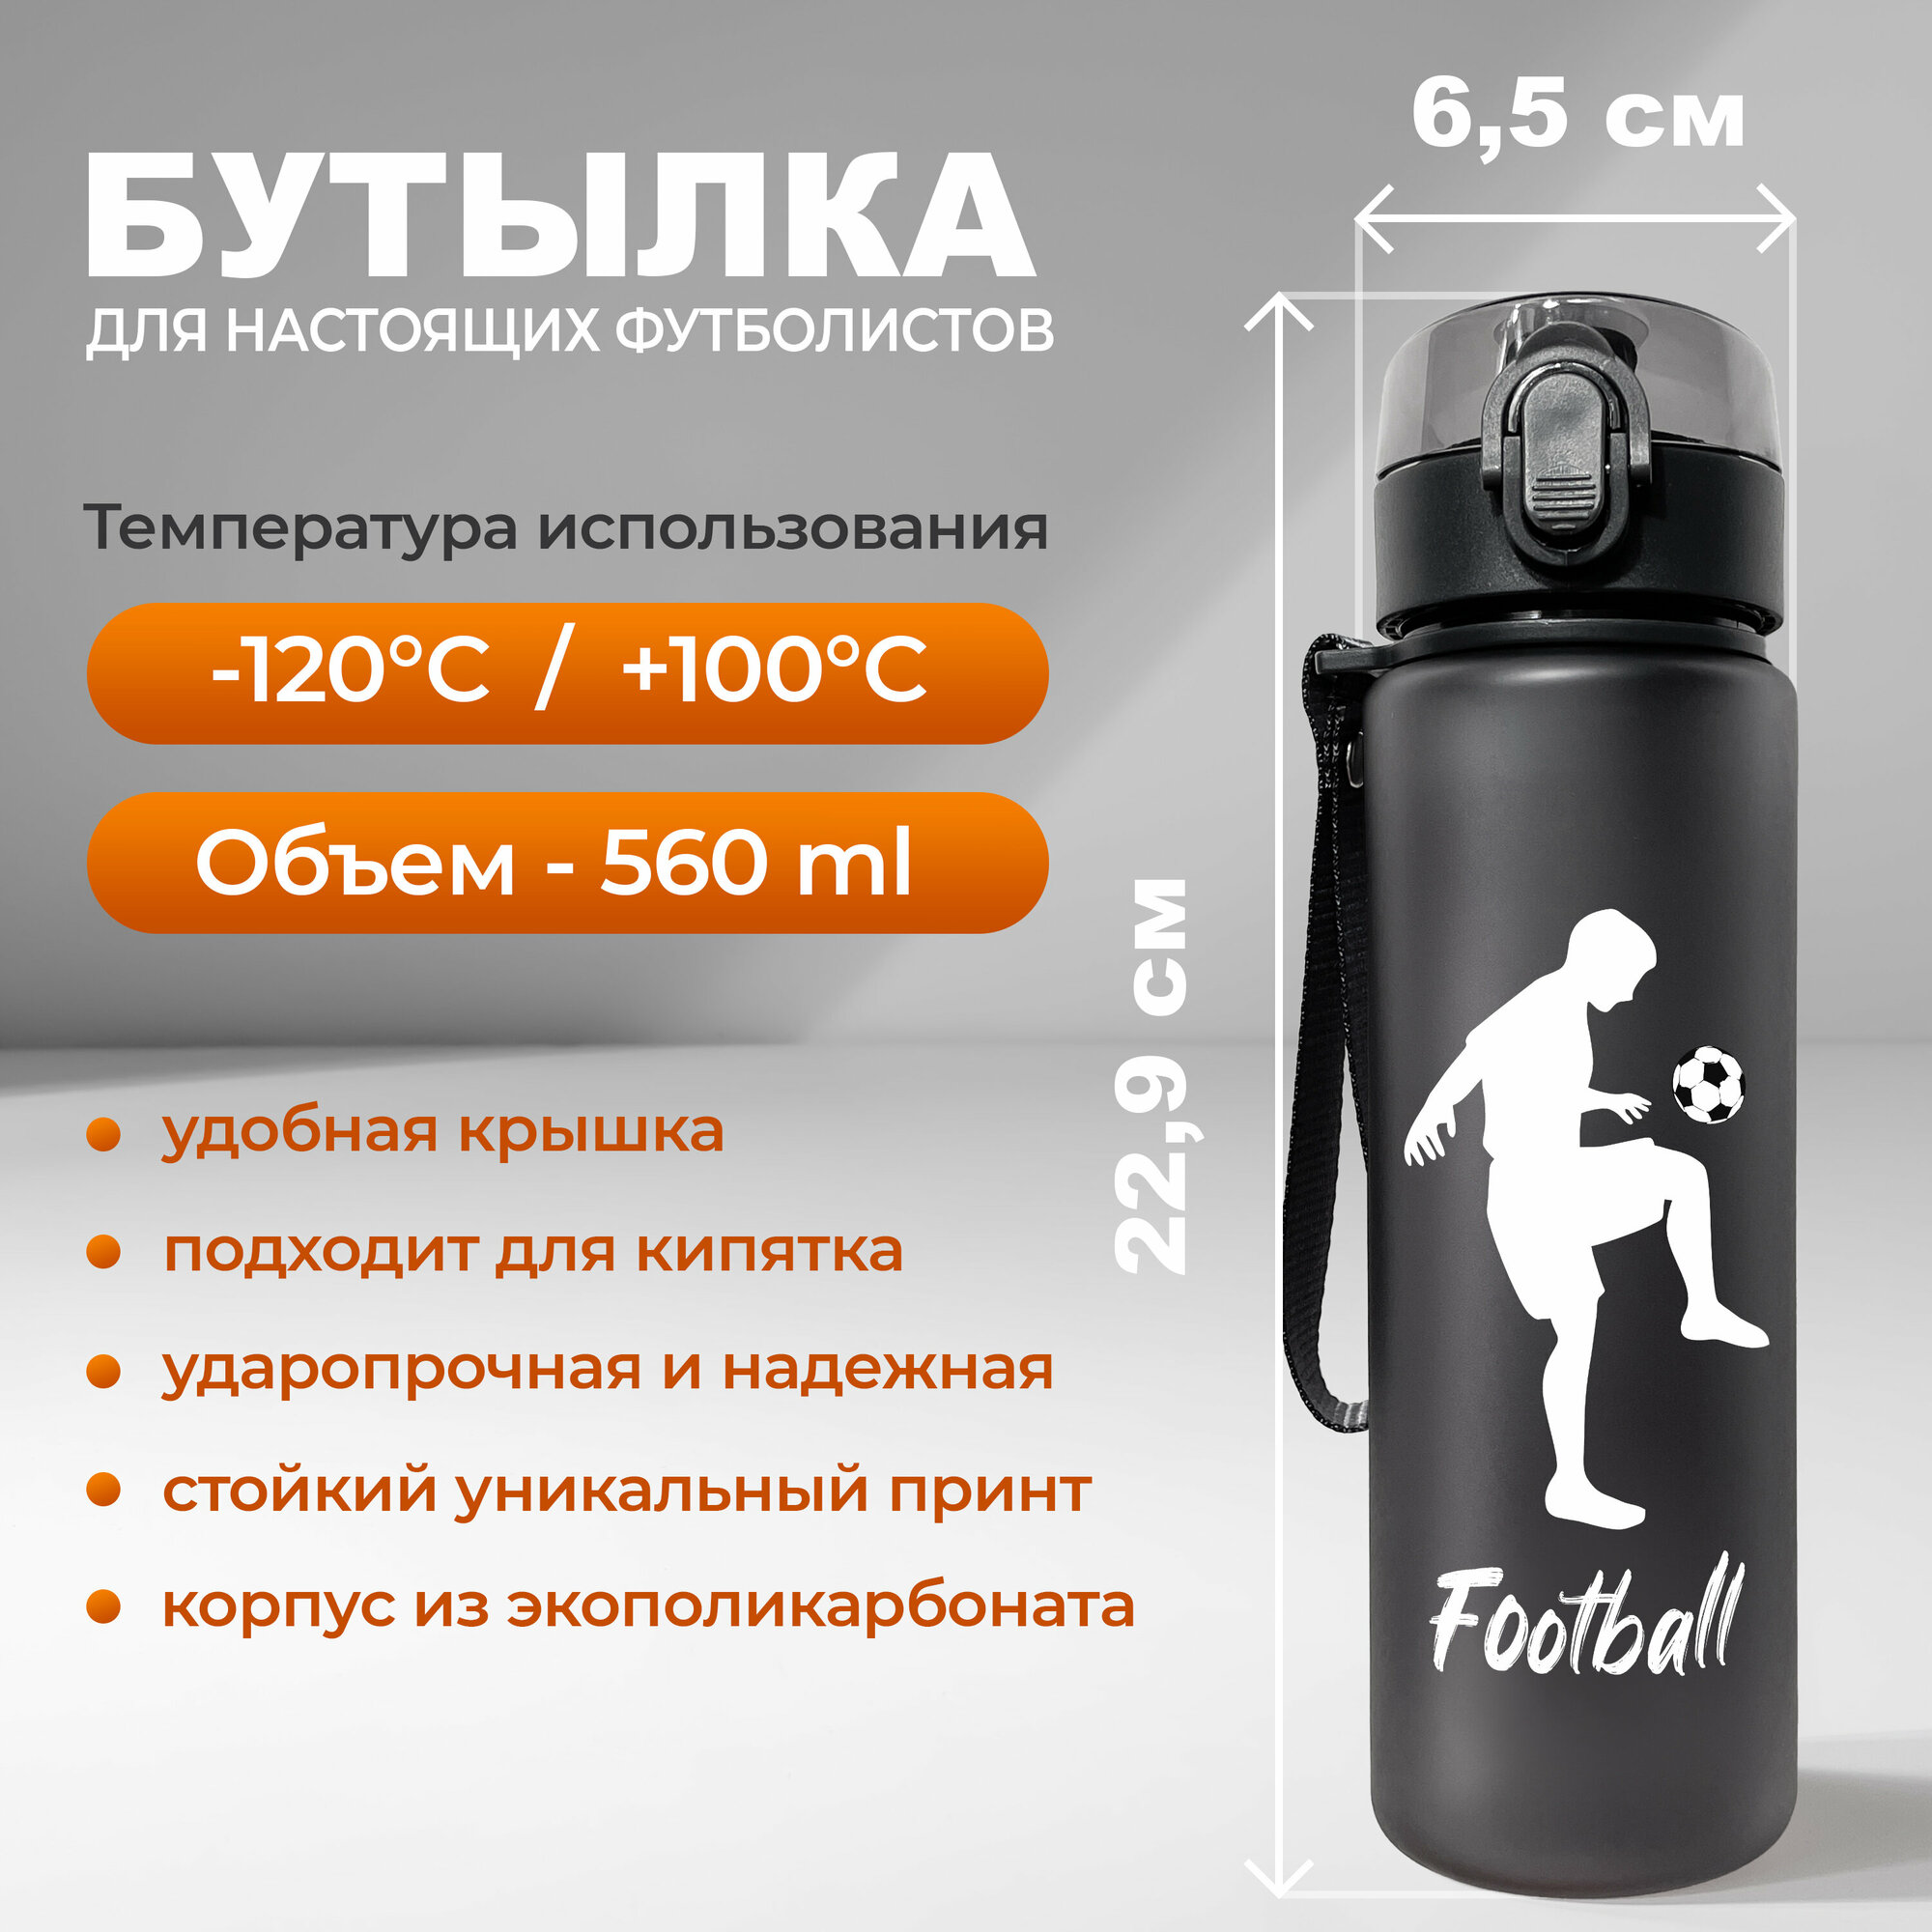 Спортивная бутылка для воды Aika "Футбол" с силуэтом футболиста с мячом и надписью Football, объемом 560 мл, черного цвета